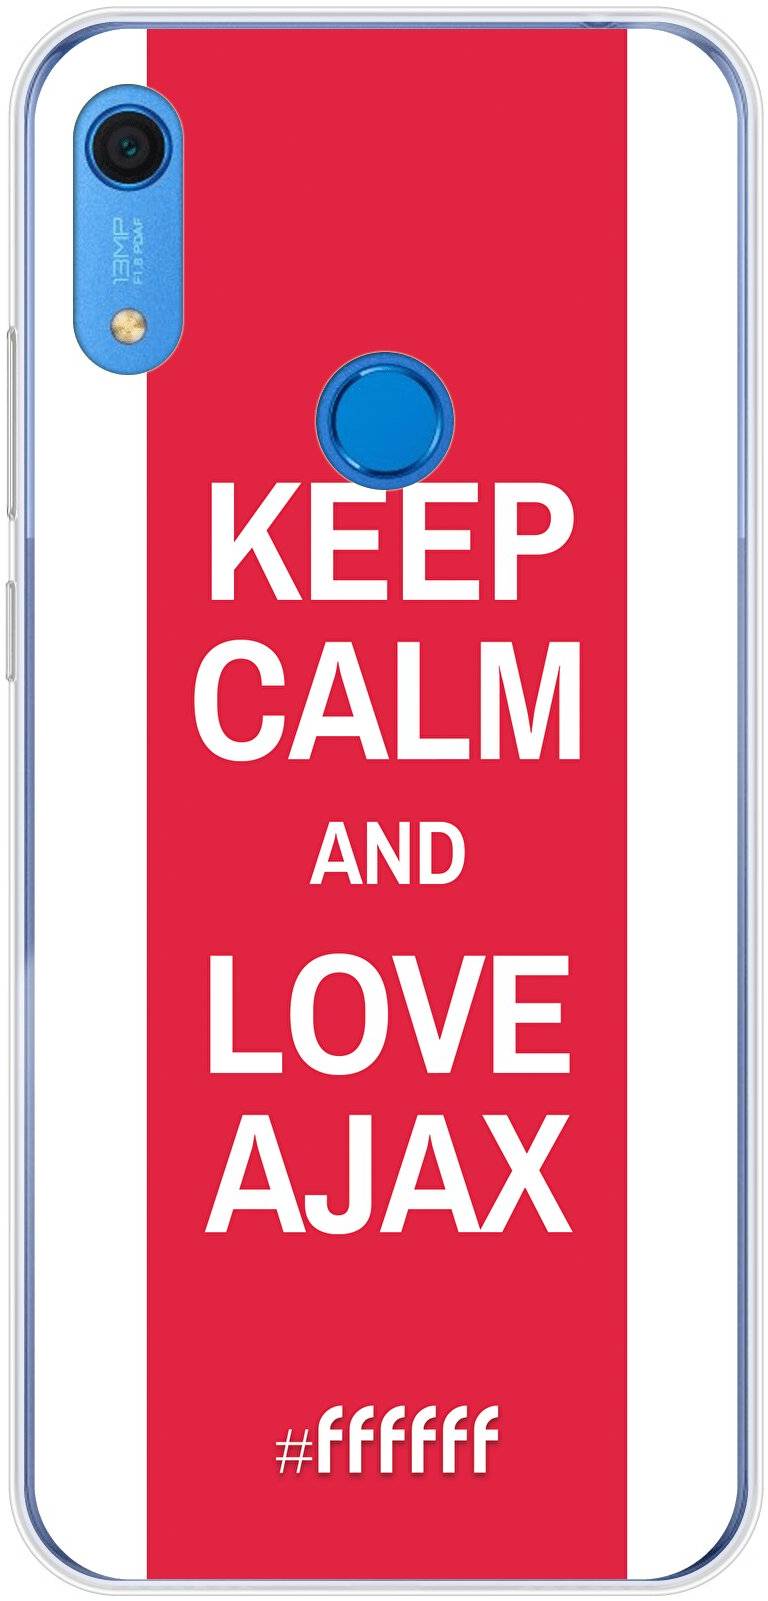 AFC Ajax Keep Calm Y6s